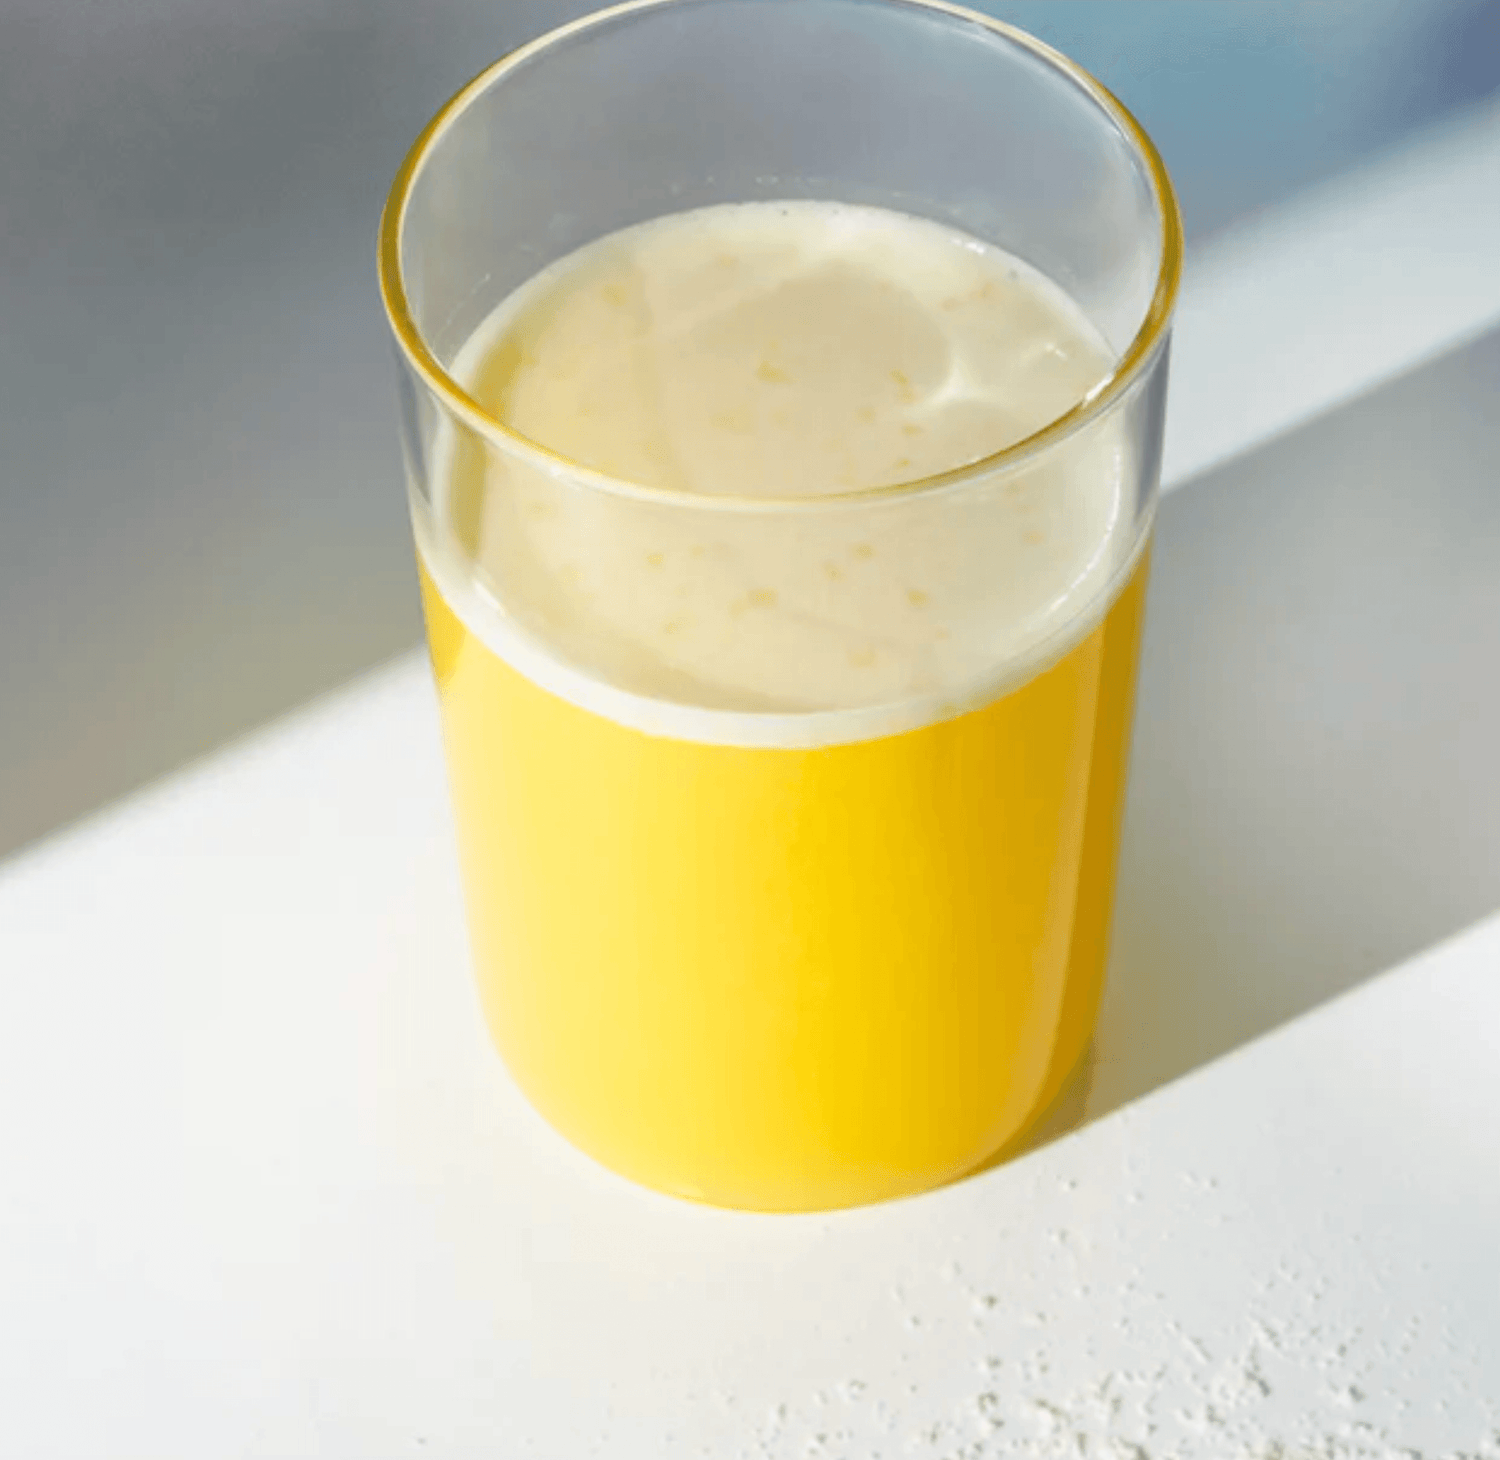 Een glas GOODstuff van Elodie x Rainpharma sinaasappelsap met een schuimige bovenkant, geplaatst op een zonverlicht oppervlak dat zachte schaduwen werpt, verrijkt met collageen als voedingssupplement.